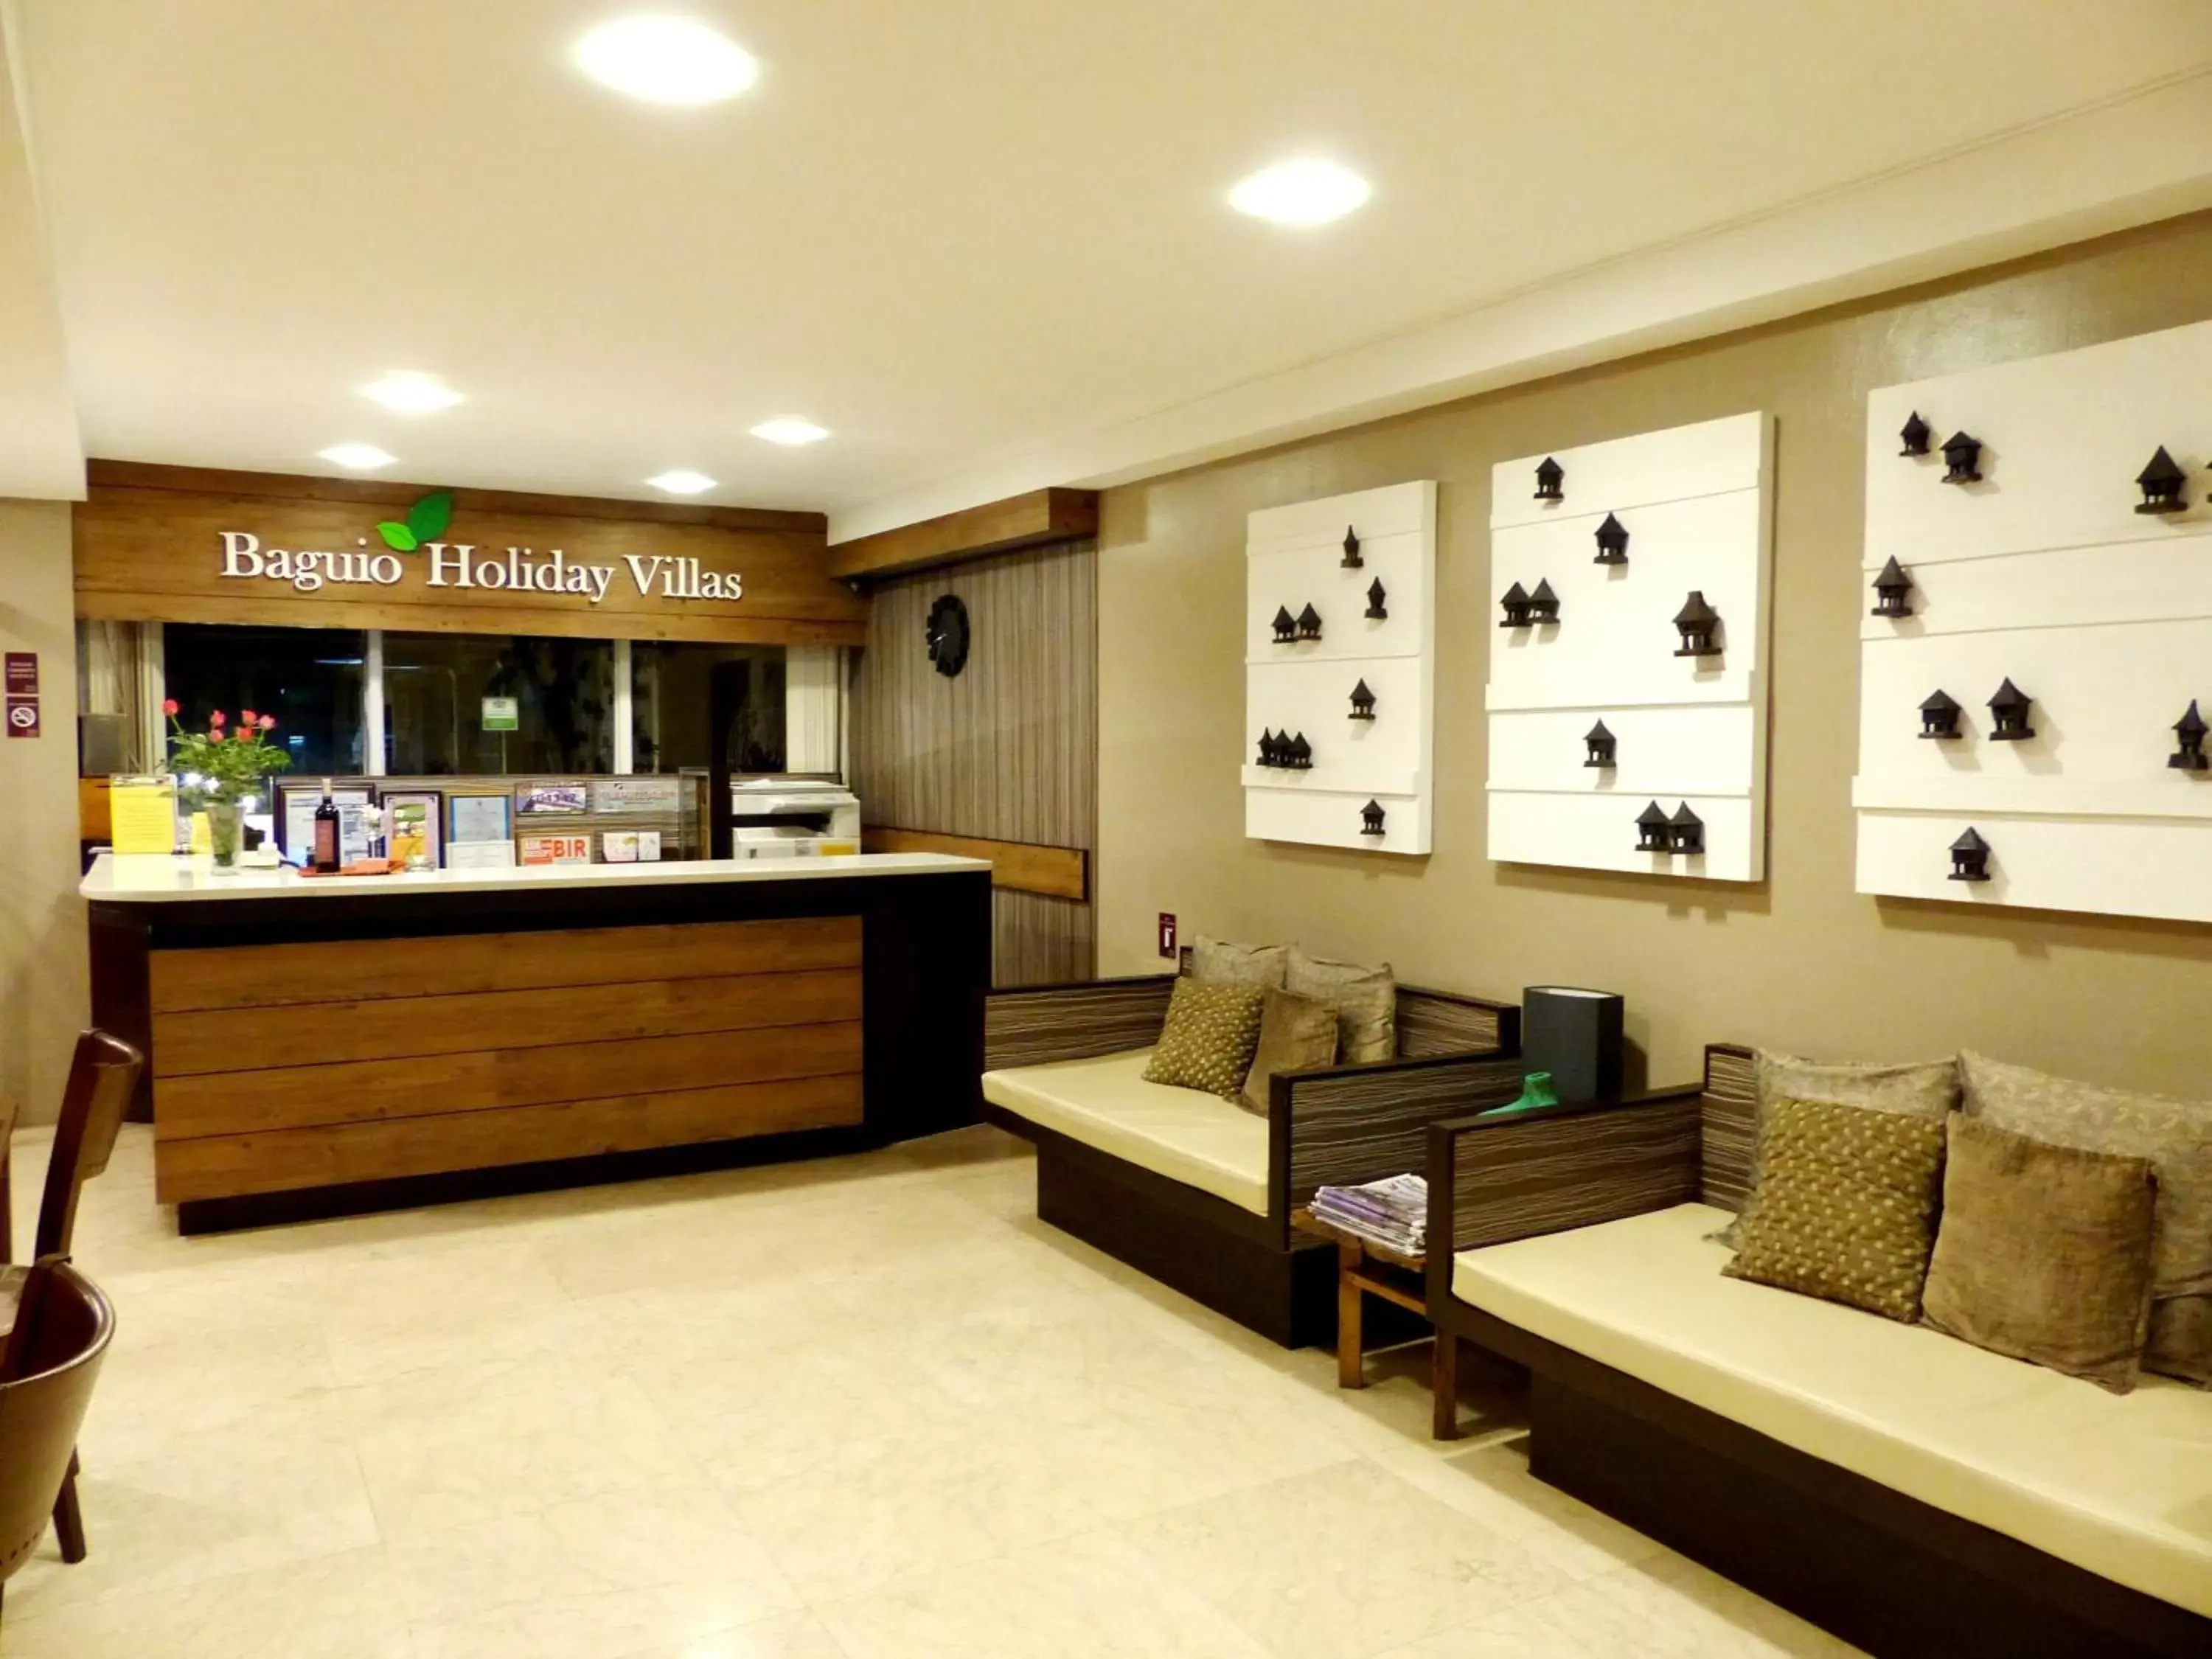 Lobby or reception, Lobby/Reception in Baguio Holiday Villas